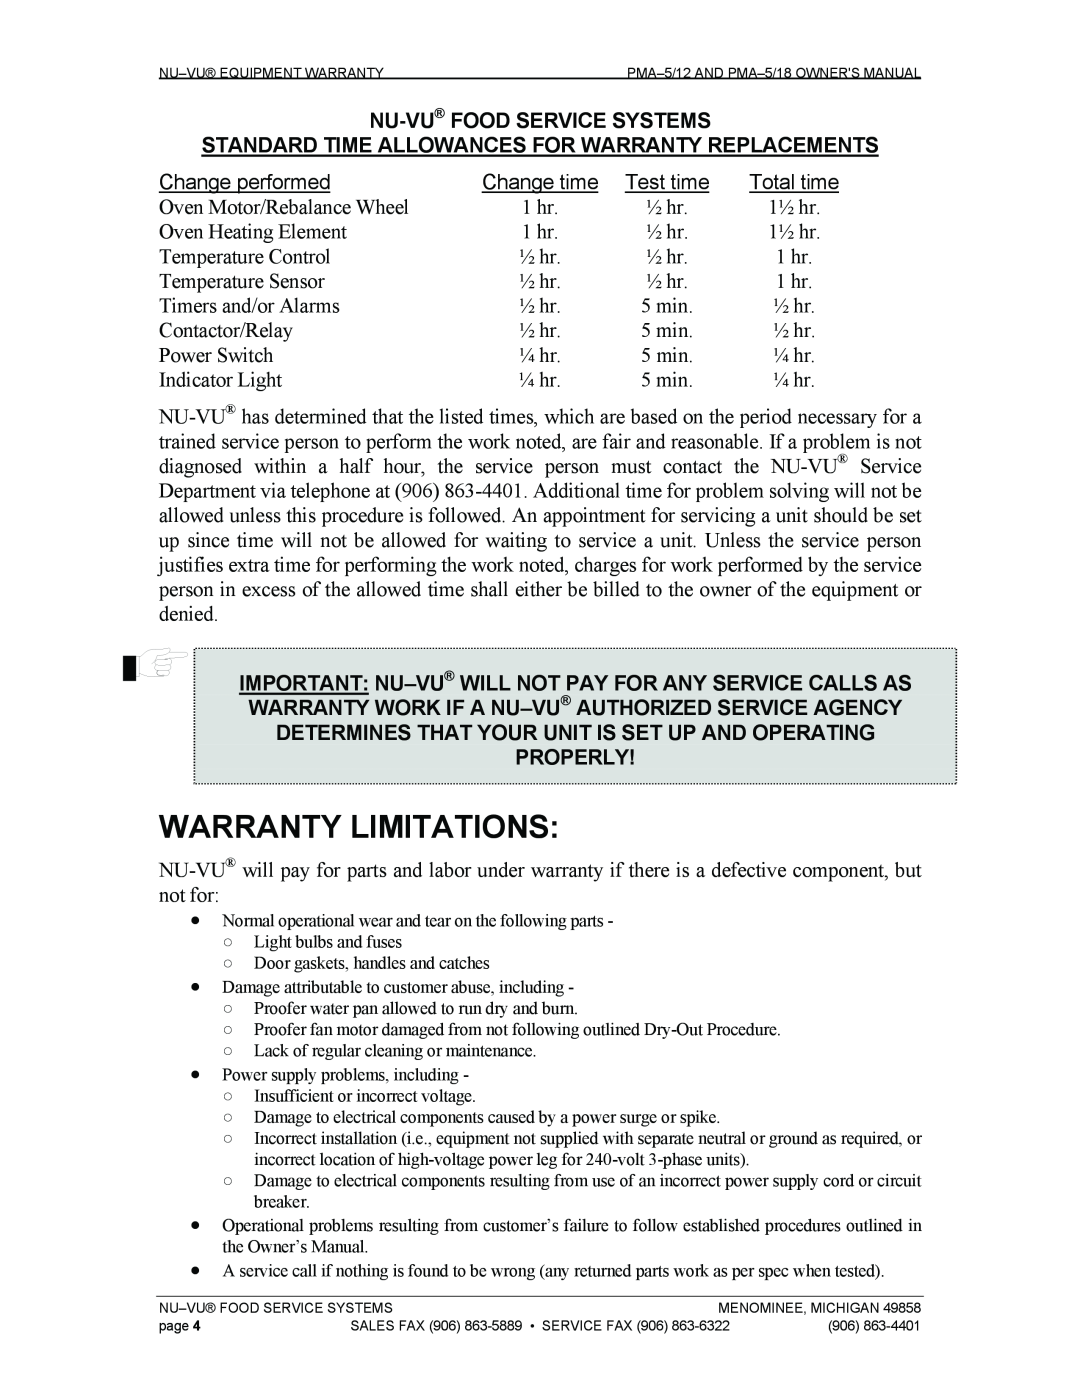 Nu-Vu PMA 5/18, PMA -5/12 owner manual Warranty Limitations, Change performed, Test time, Total time 